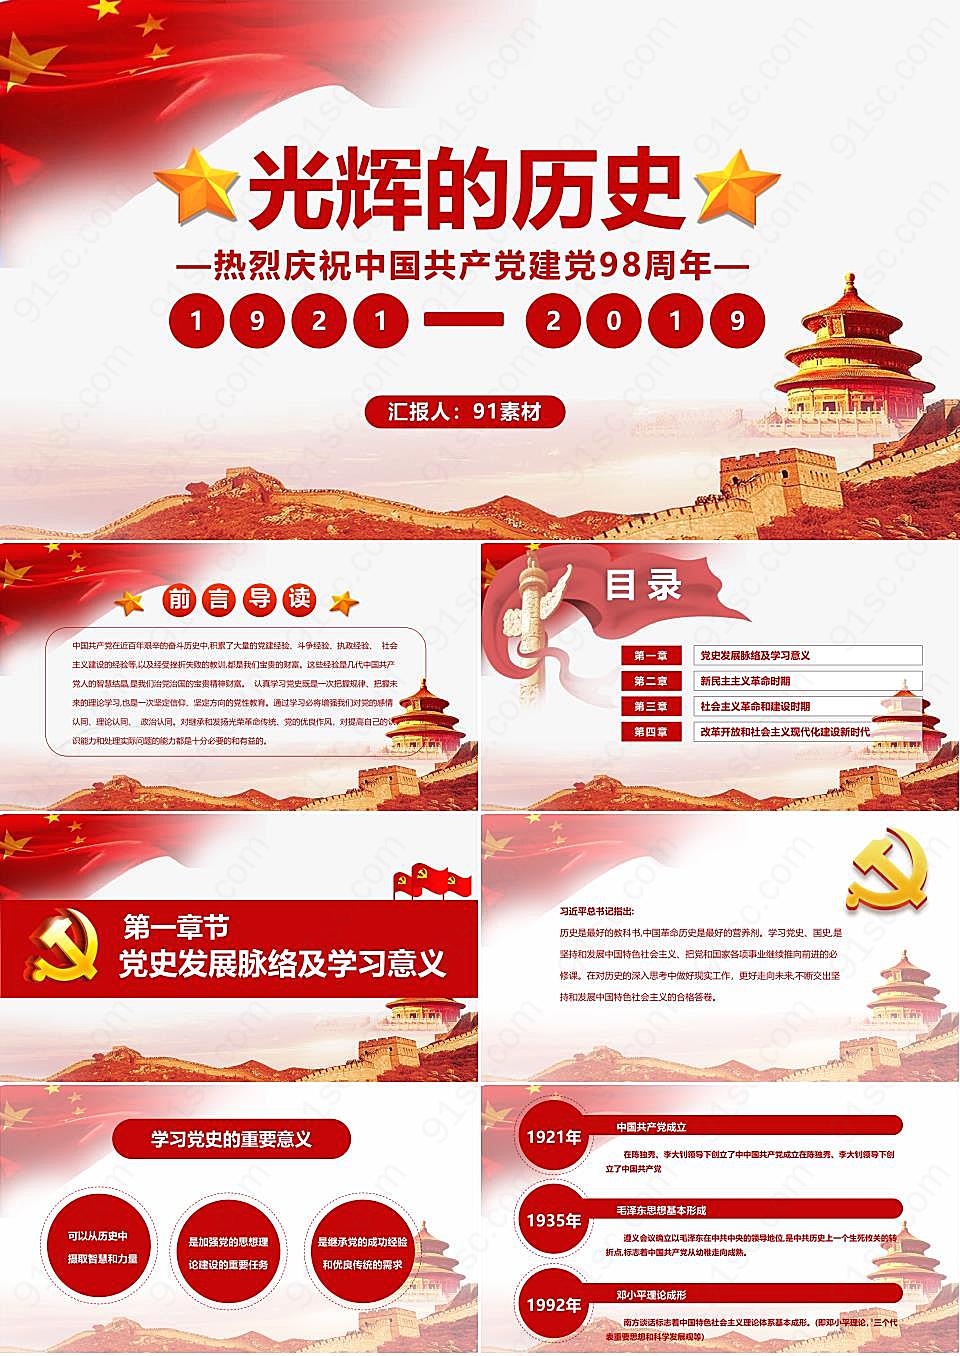 《光辉的历史》庆祝中国共产党建党98周年建党节节日庆典